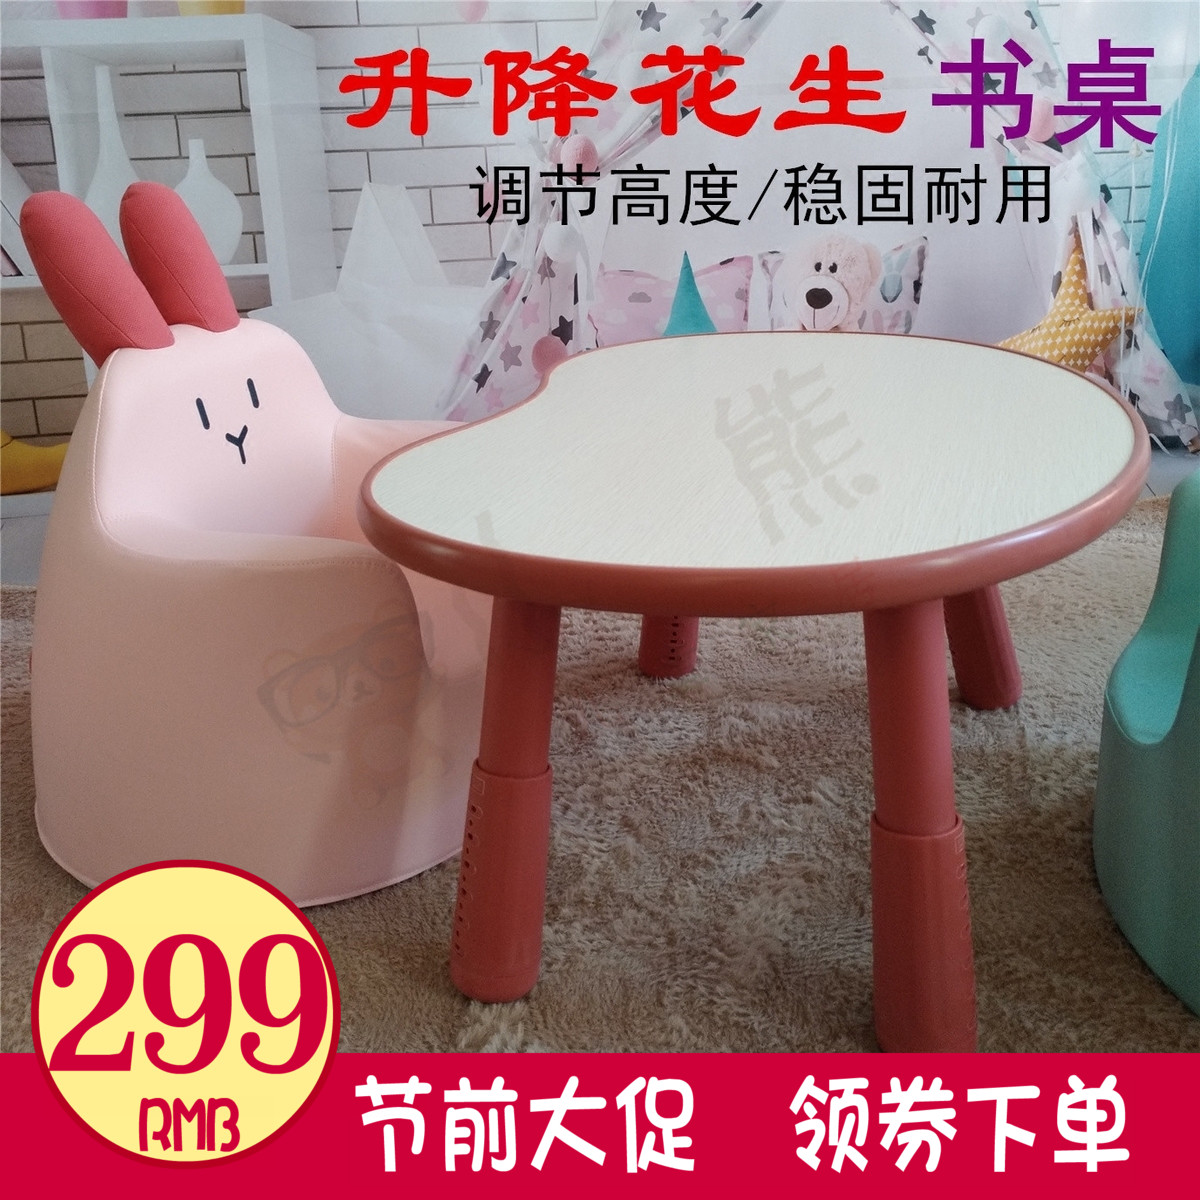 新品韩国宝宝儿童学习桌可升降可调节桌子儿童写字桌游戏桌书桌